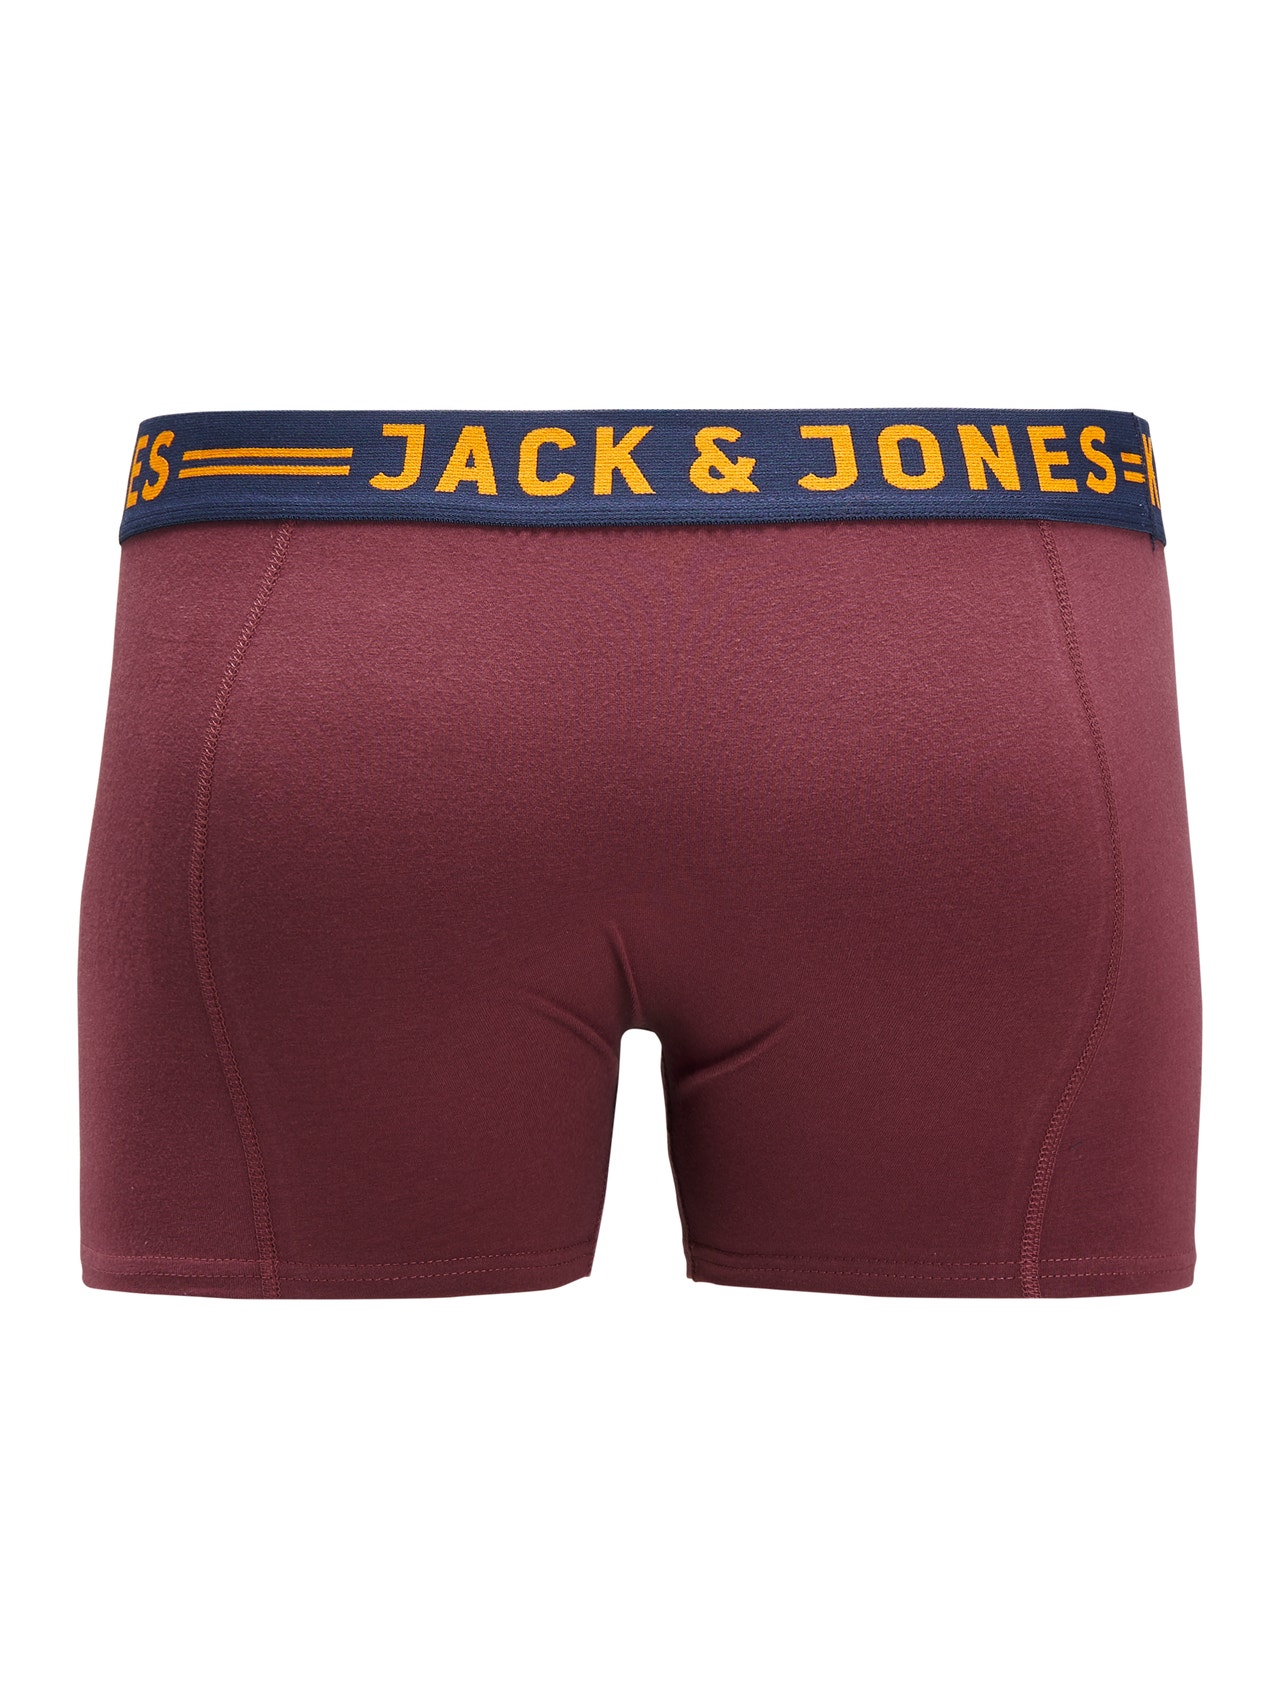 Jack & Jones Plus Size 3-pak Bokserki -Burgundy - 12147592